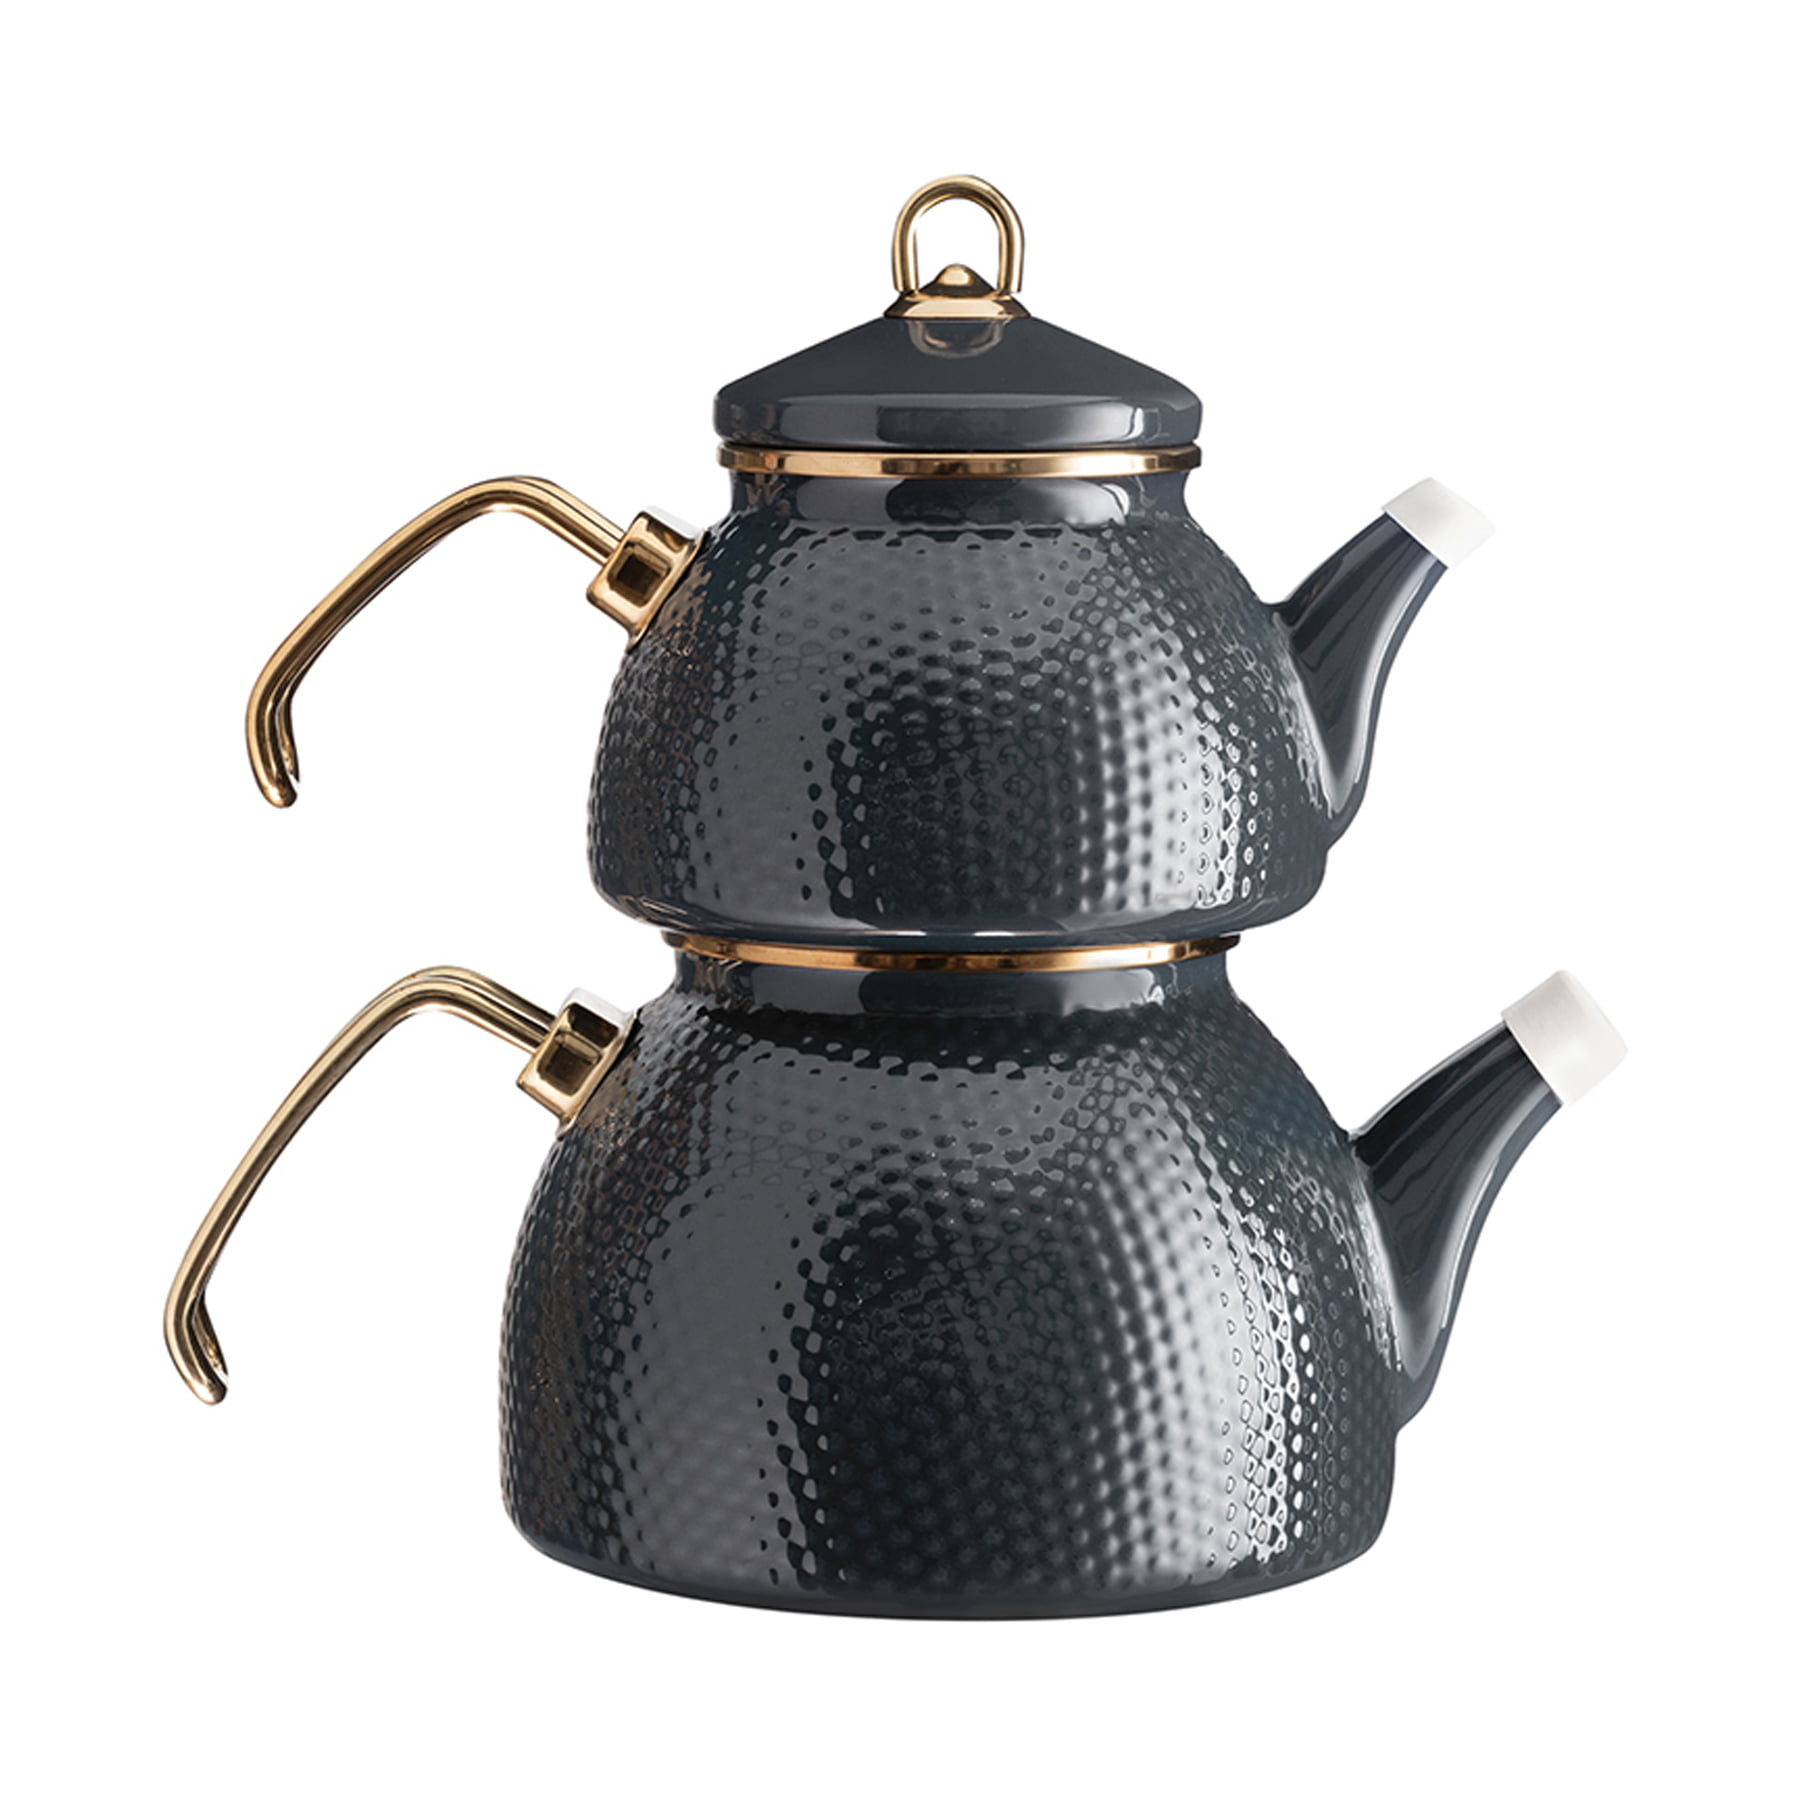 https://traditionalturk.com/wp-content/uploads/2021/12/anthracite-color-ceremony-enamel-turkish-tea-pot-kettle-3.jpg